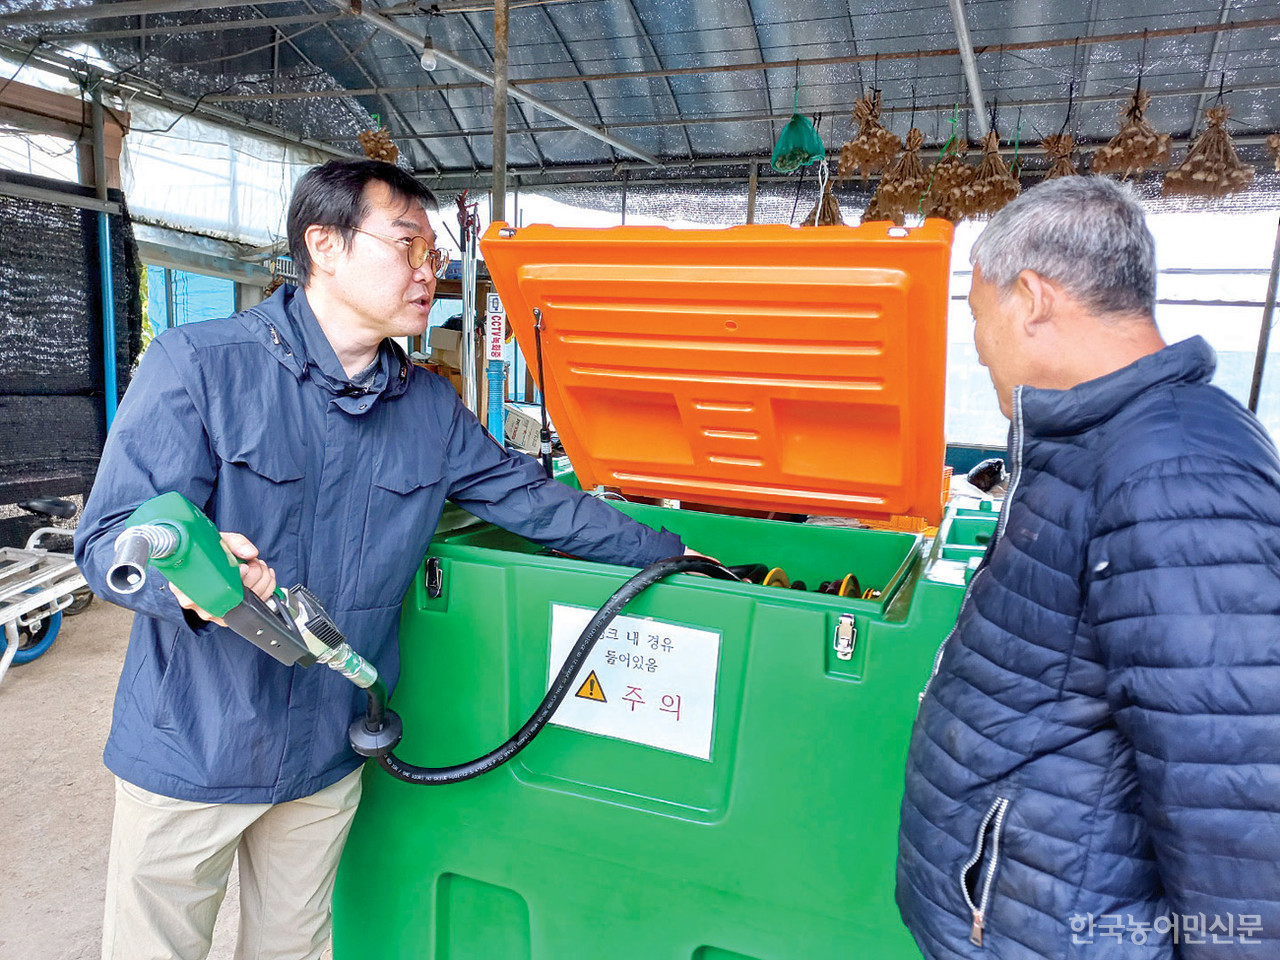 문영수 강원지사장(왼쪽)이 신복교 홍천군 농업인에게 국산화에 성공한 급유탱크의 기능과 장점을 설명하고 있다.